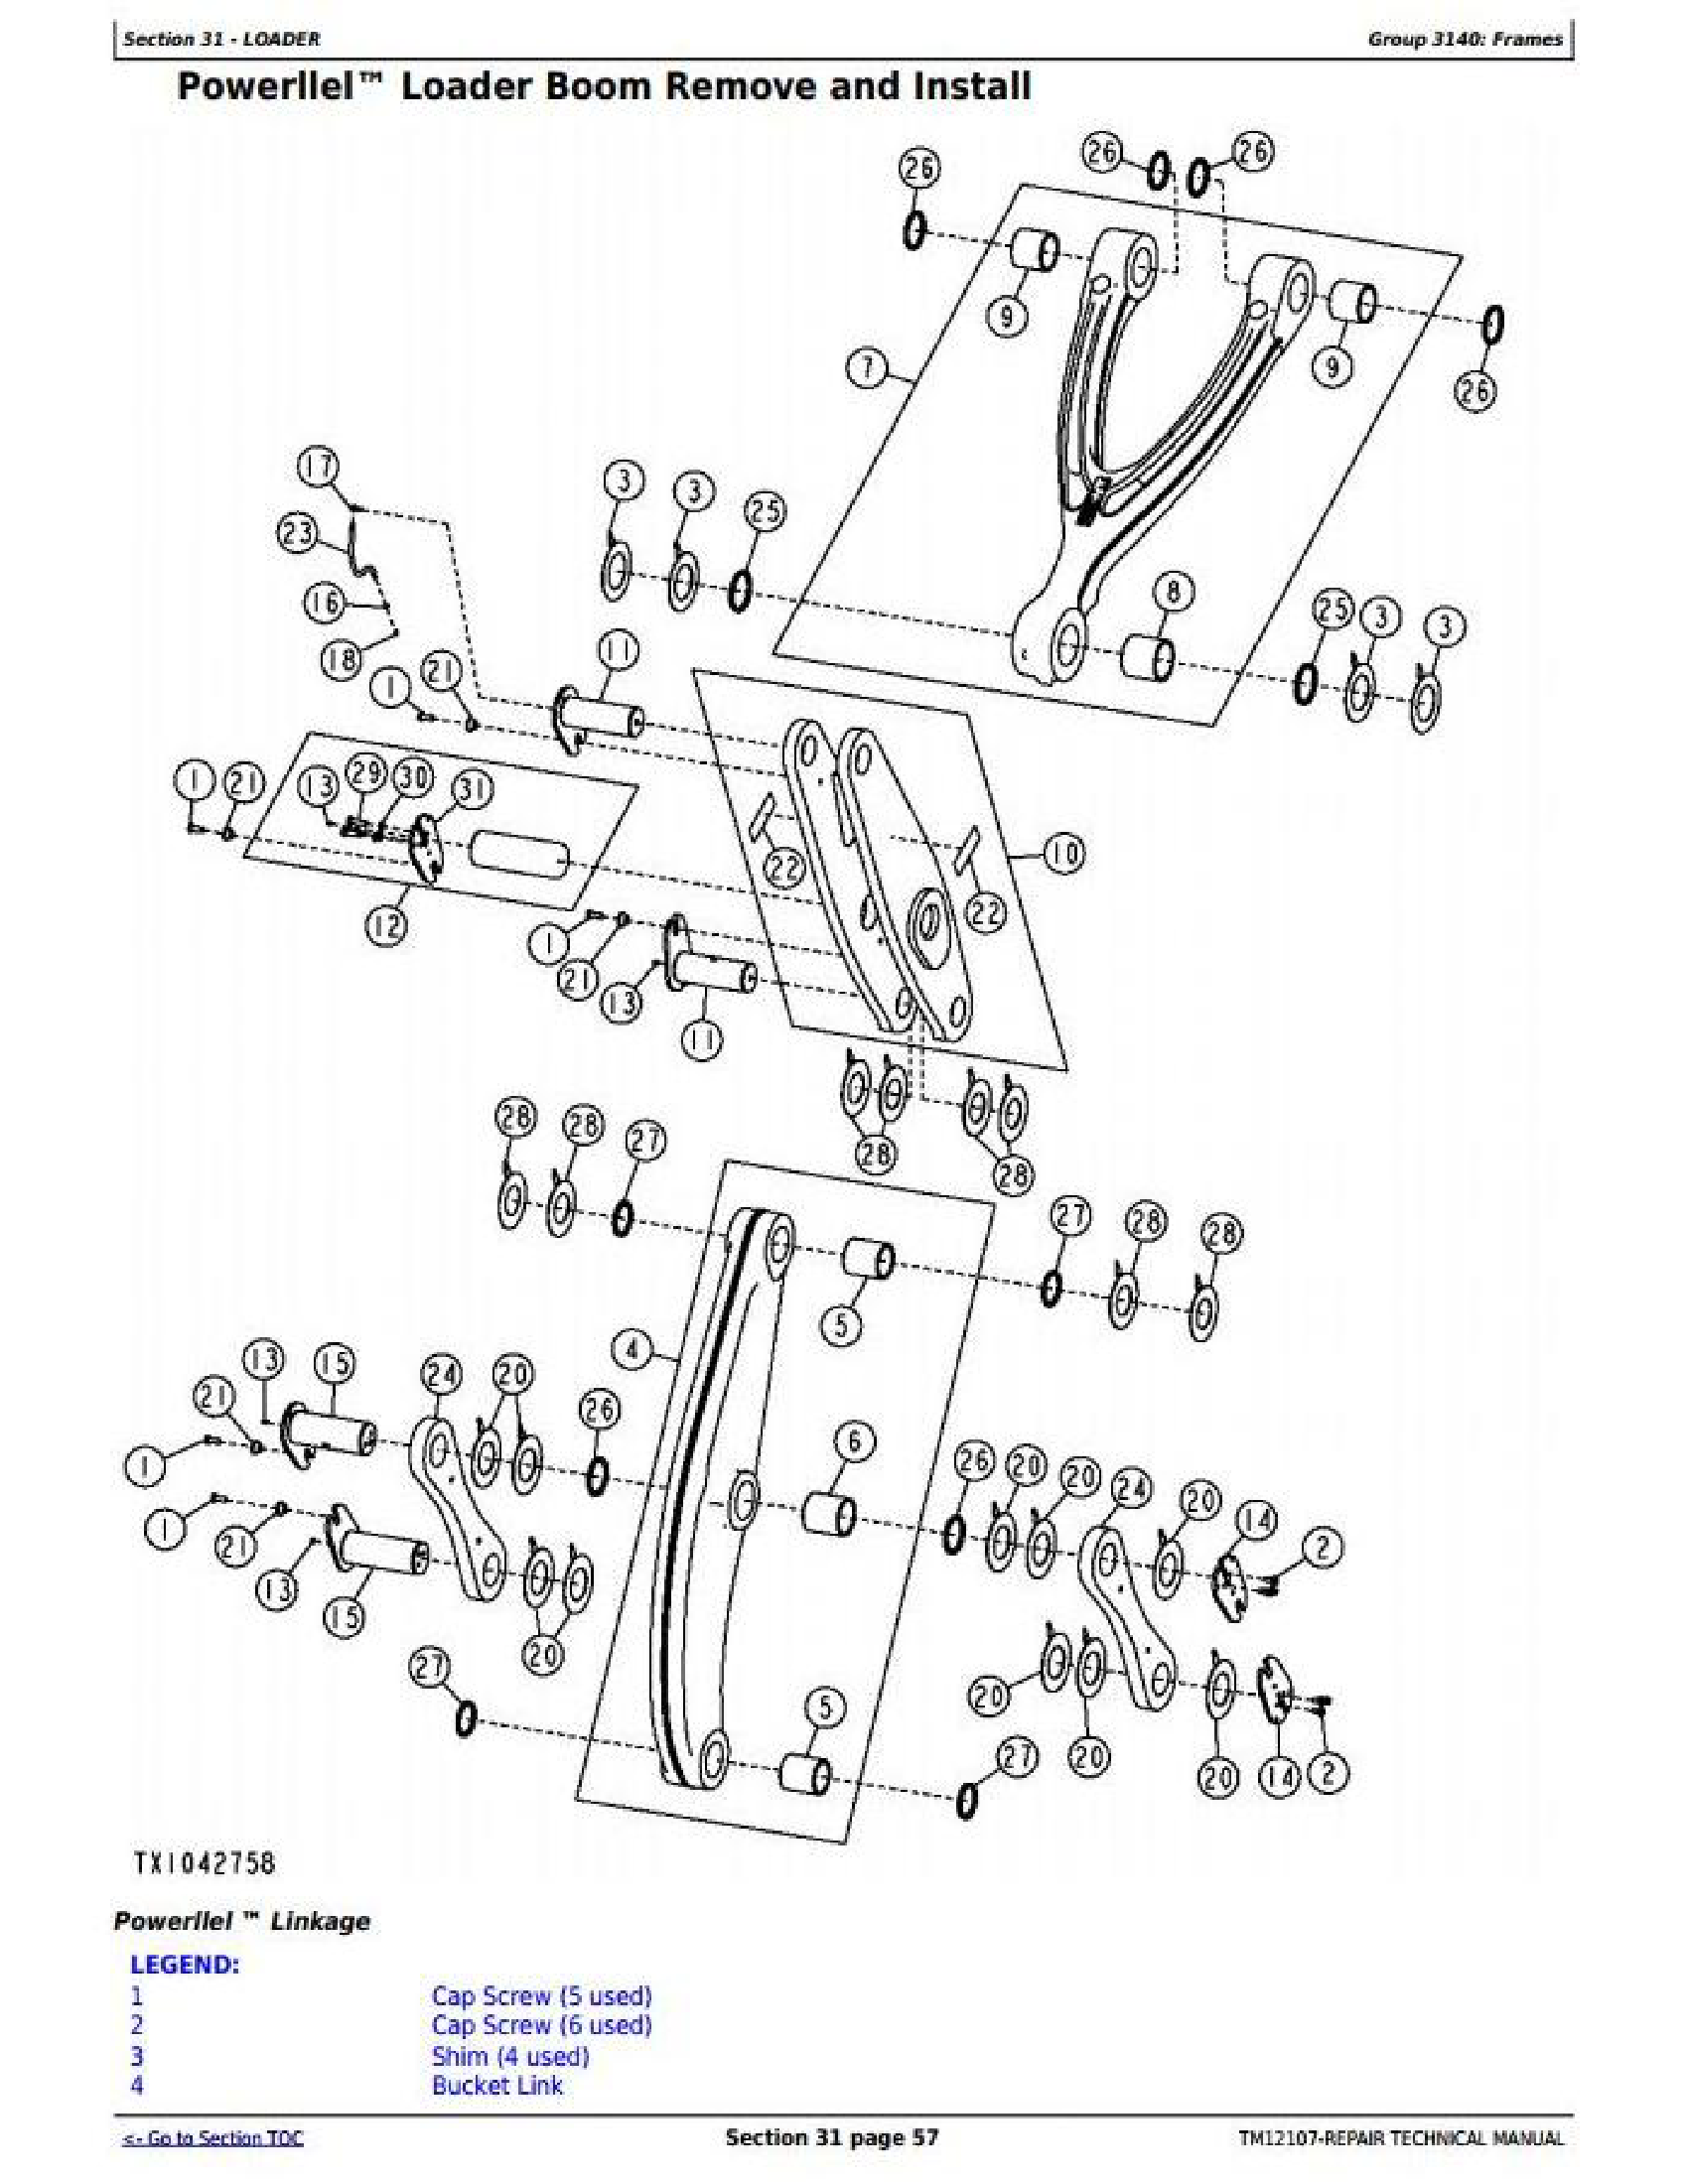 John Deere 460E manual pdf